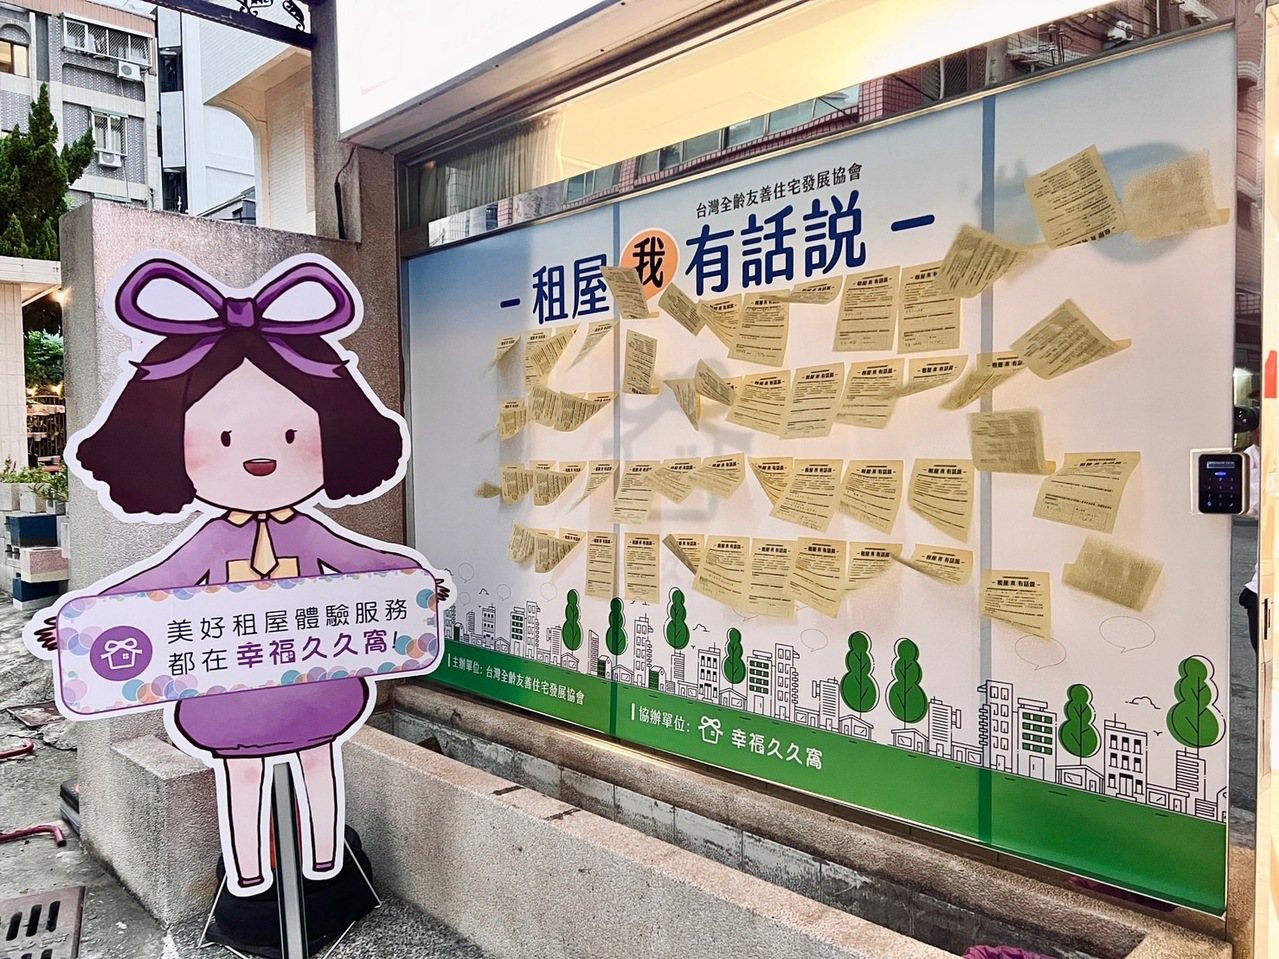 台灣全齡友善住宅發展協會首次《租屋我有話說》倡議活動，選擇在台中舉辦， 並特別邀請知名的專業包租代管業者「幸福久久窩」團隊共同協辦。